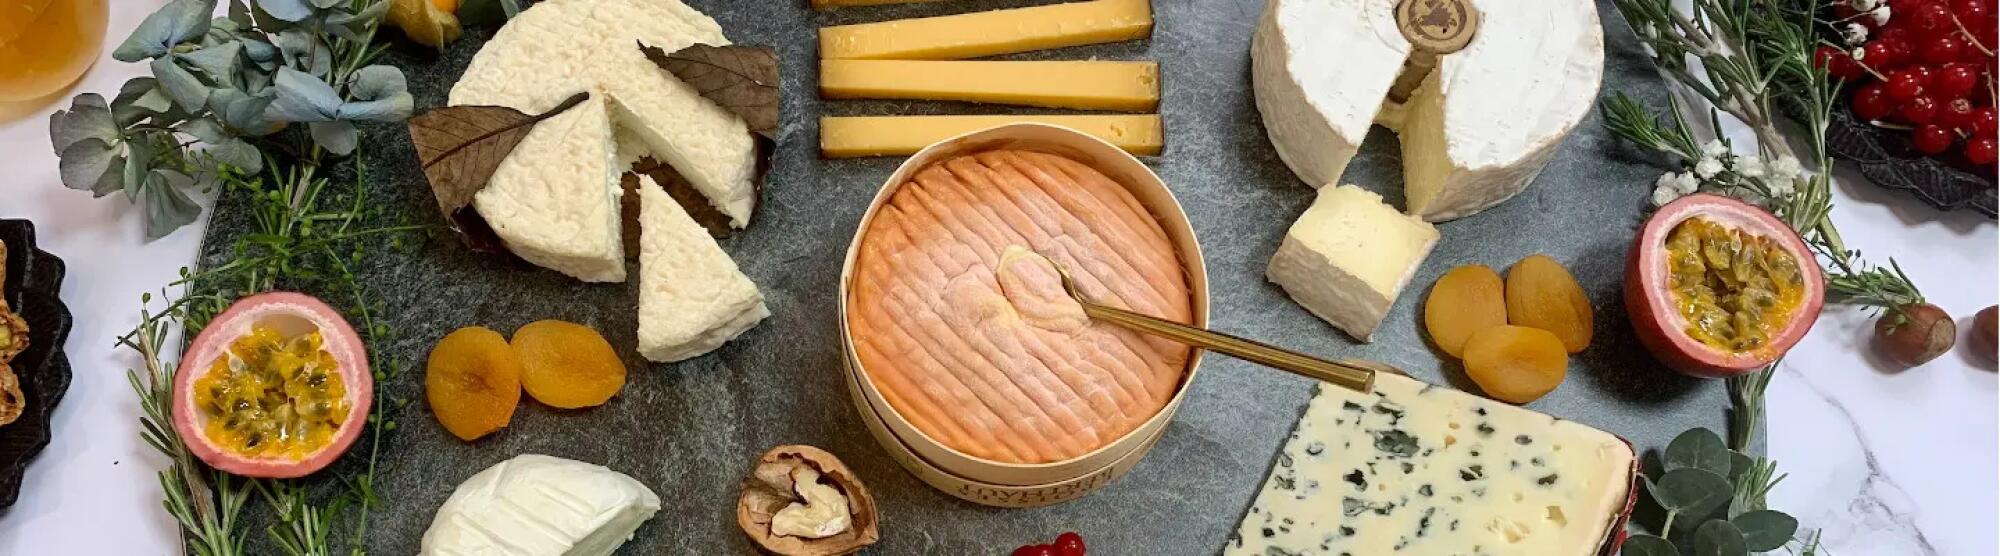 Comment faire un plateau de fromages inoubliable pour les fêtes ?